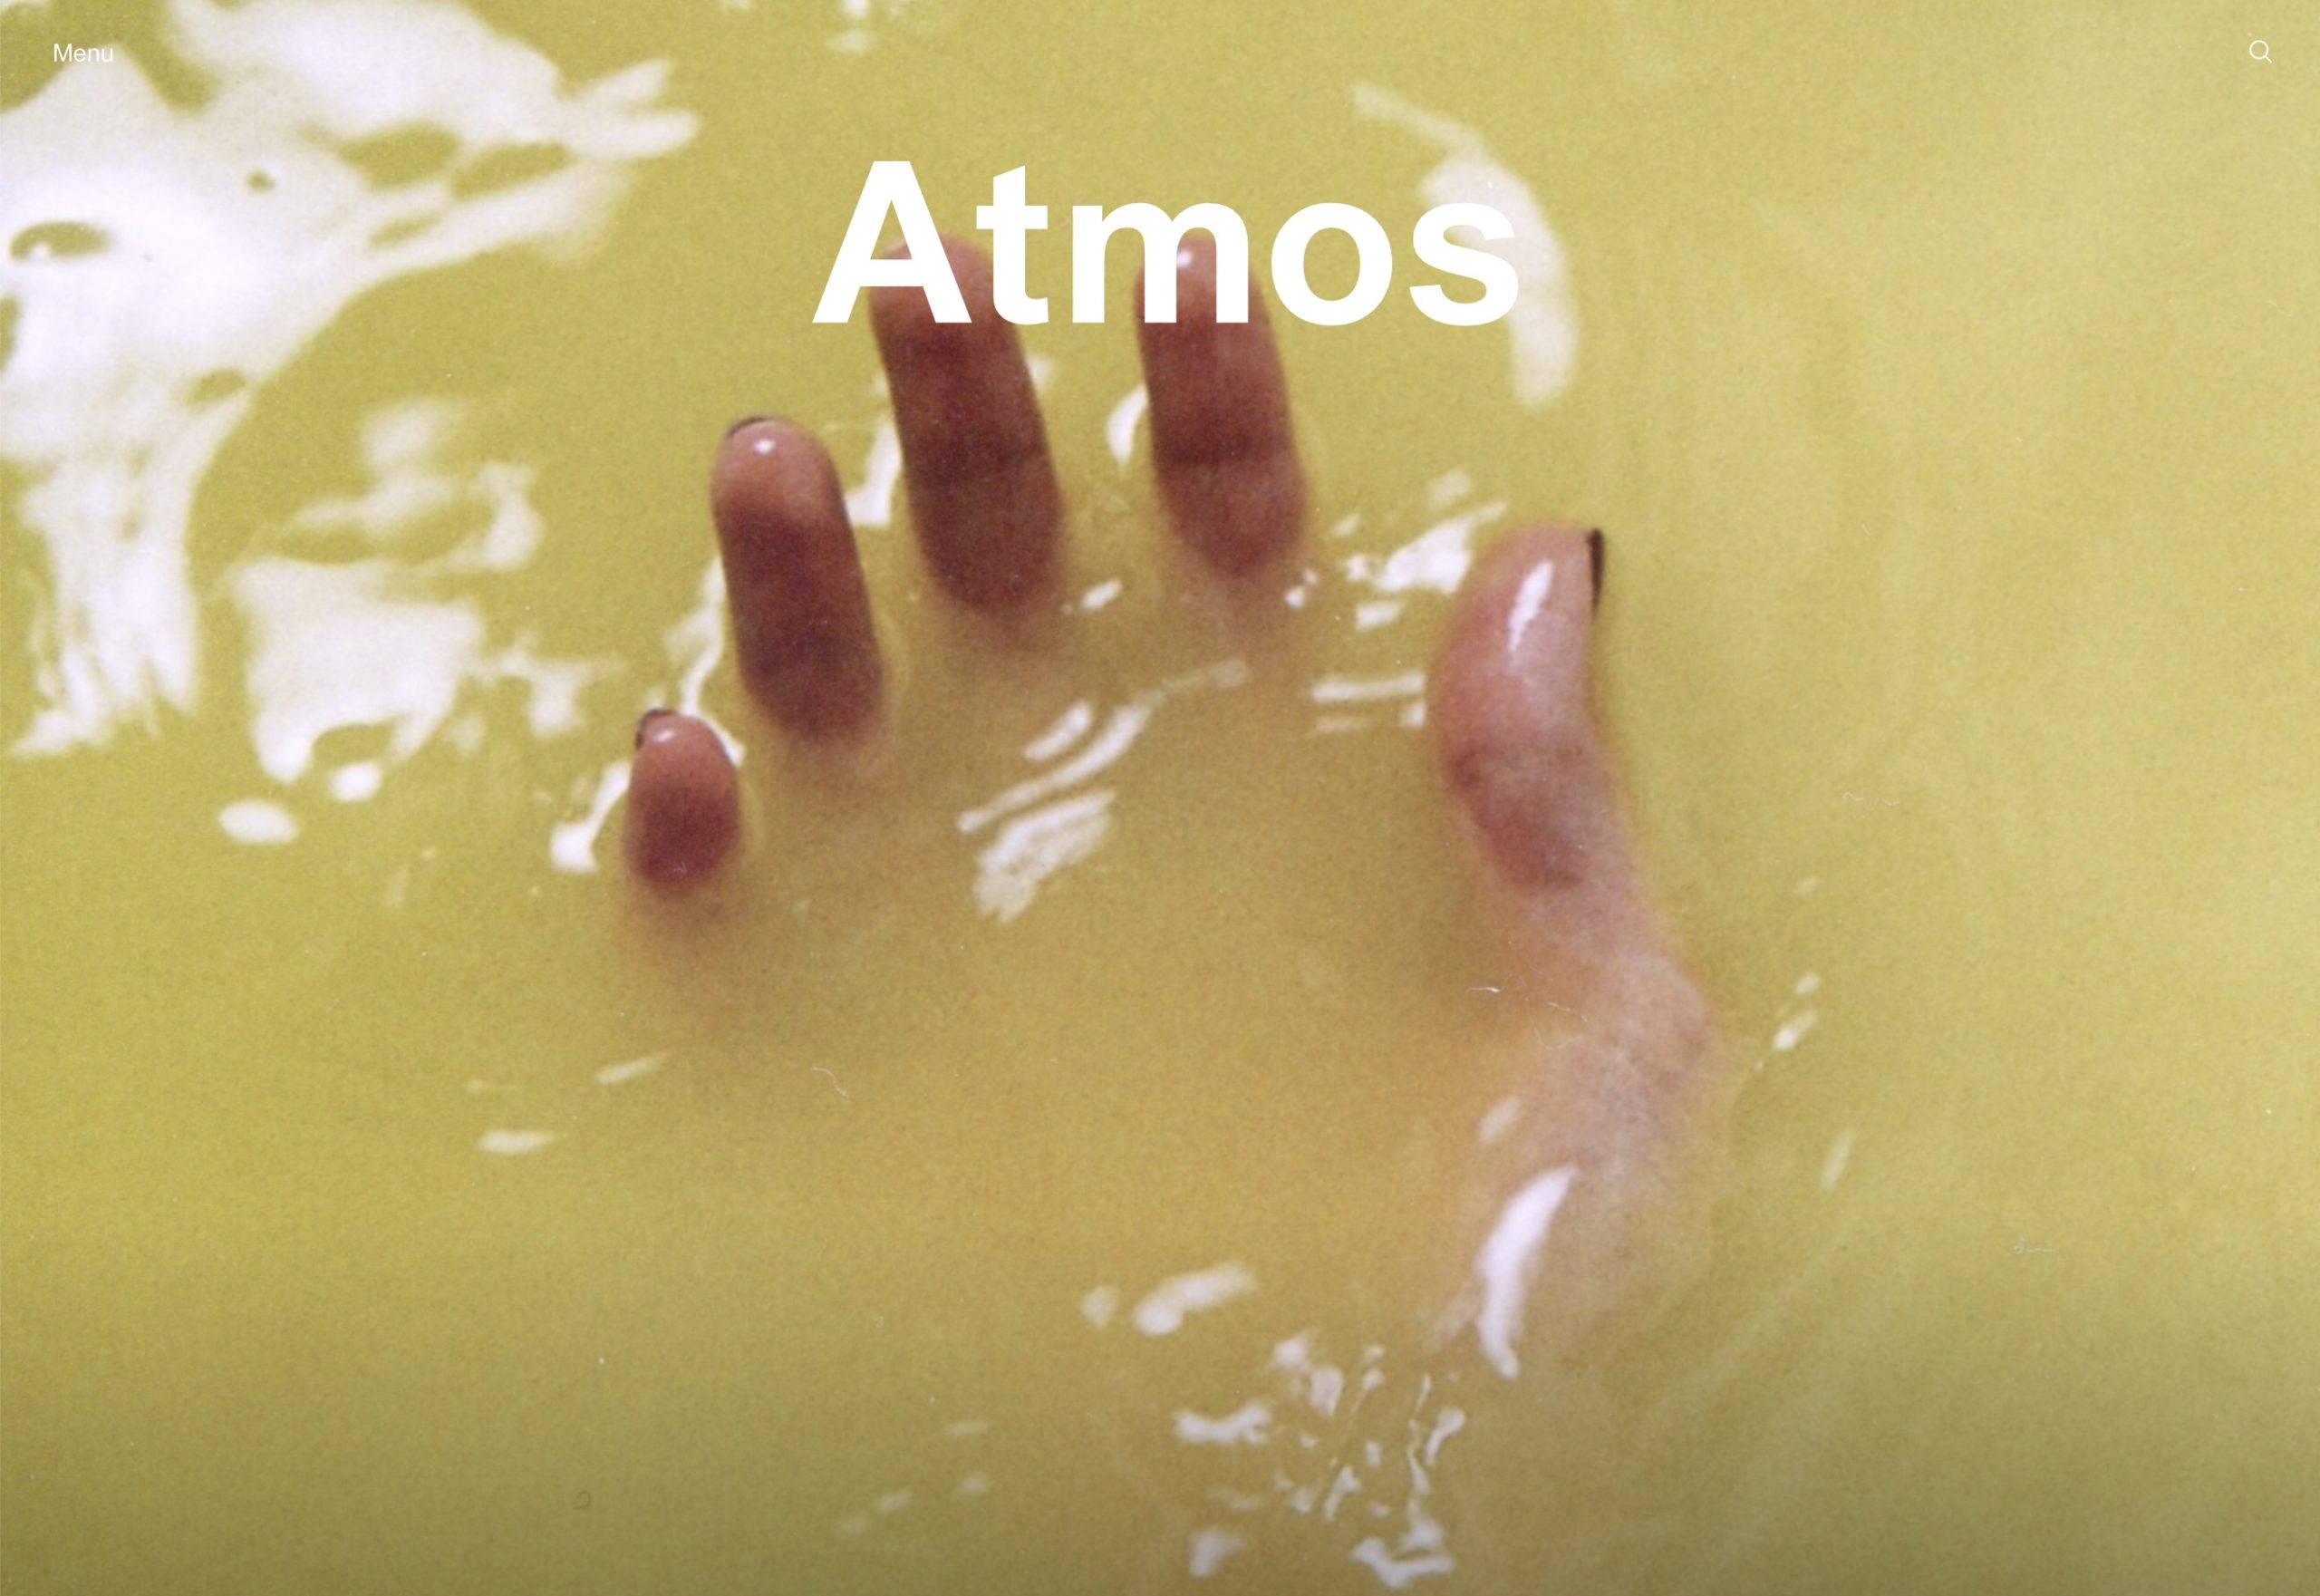 Eylül Aslan for Atmos